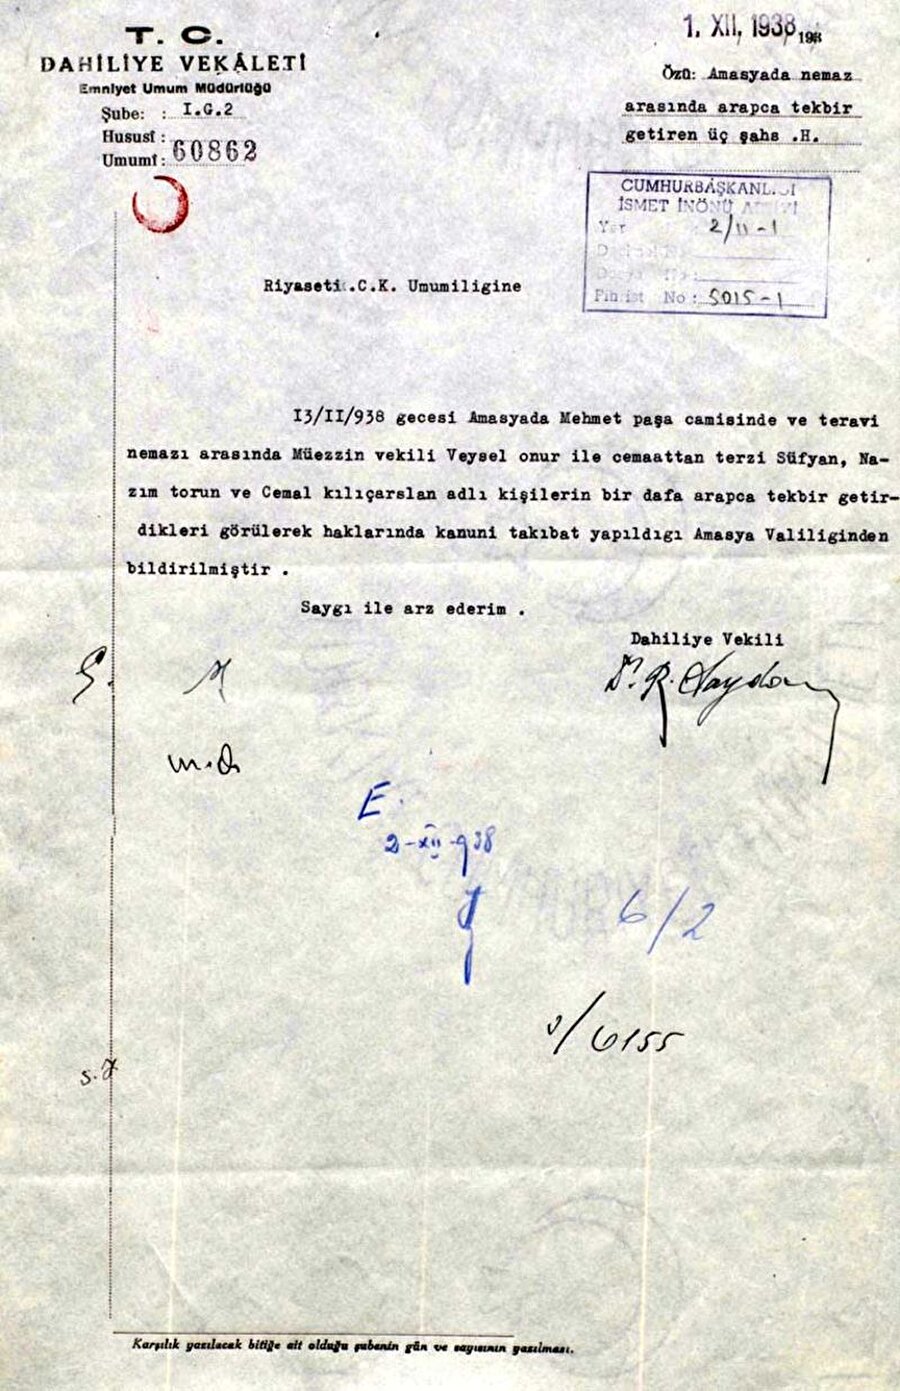  İçişleri Bakanlığı’ndan Cumhurbaşkanlığı’na 1 Aralık 1938’de gönderilen ve Amasya’da Arapça tekbir getirilmesi ile ilgili yazı.

                                    
                                